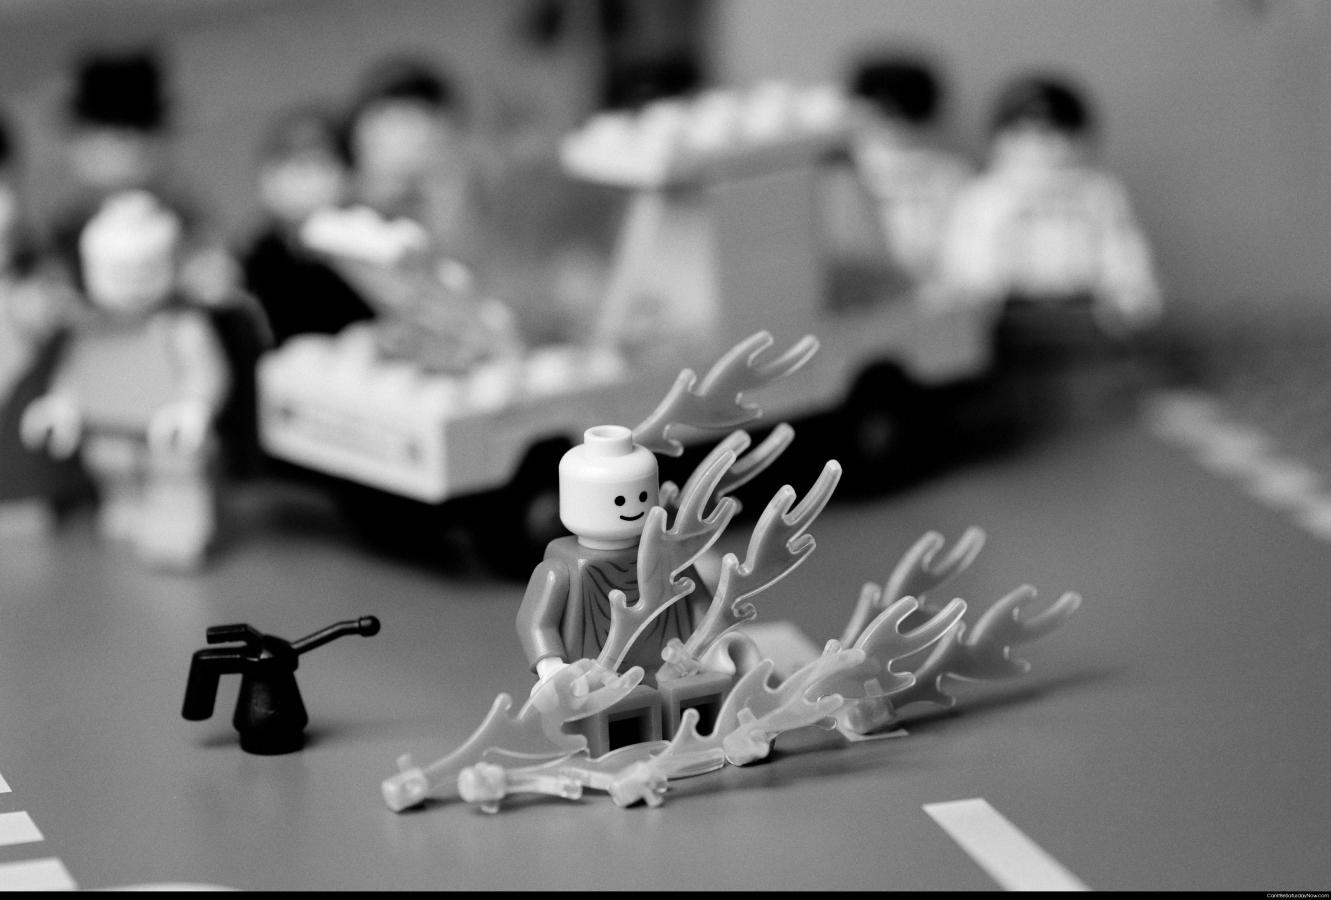 Lego munk - Lego recreation of that burning monk